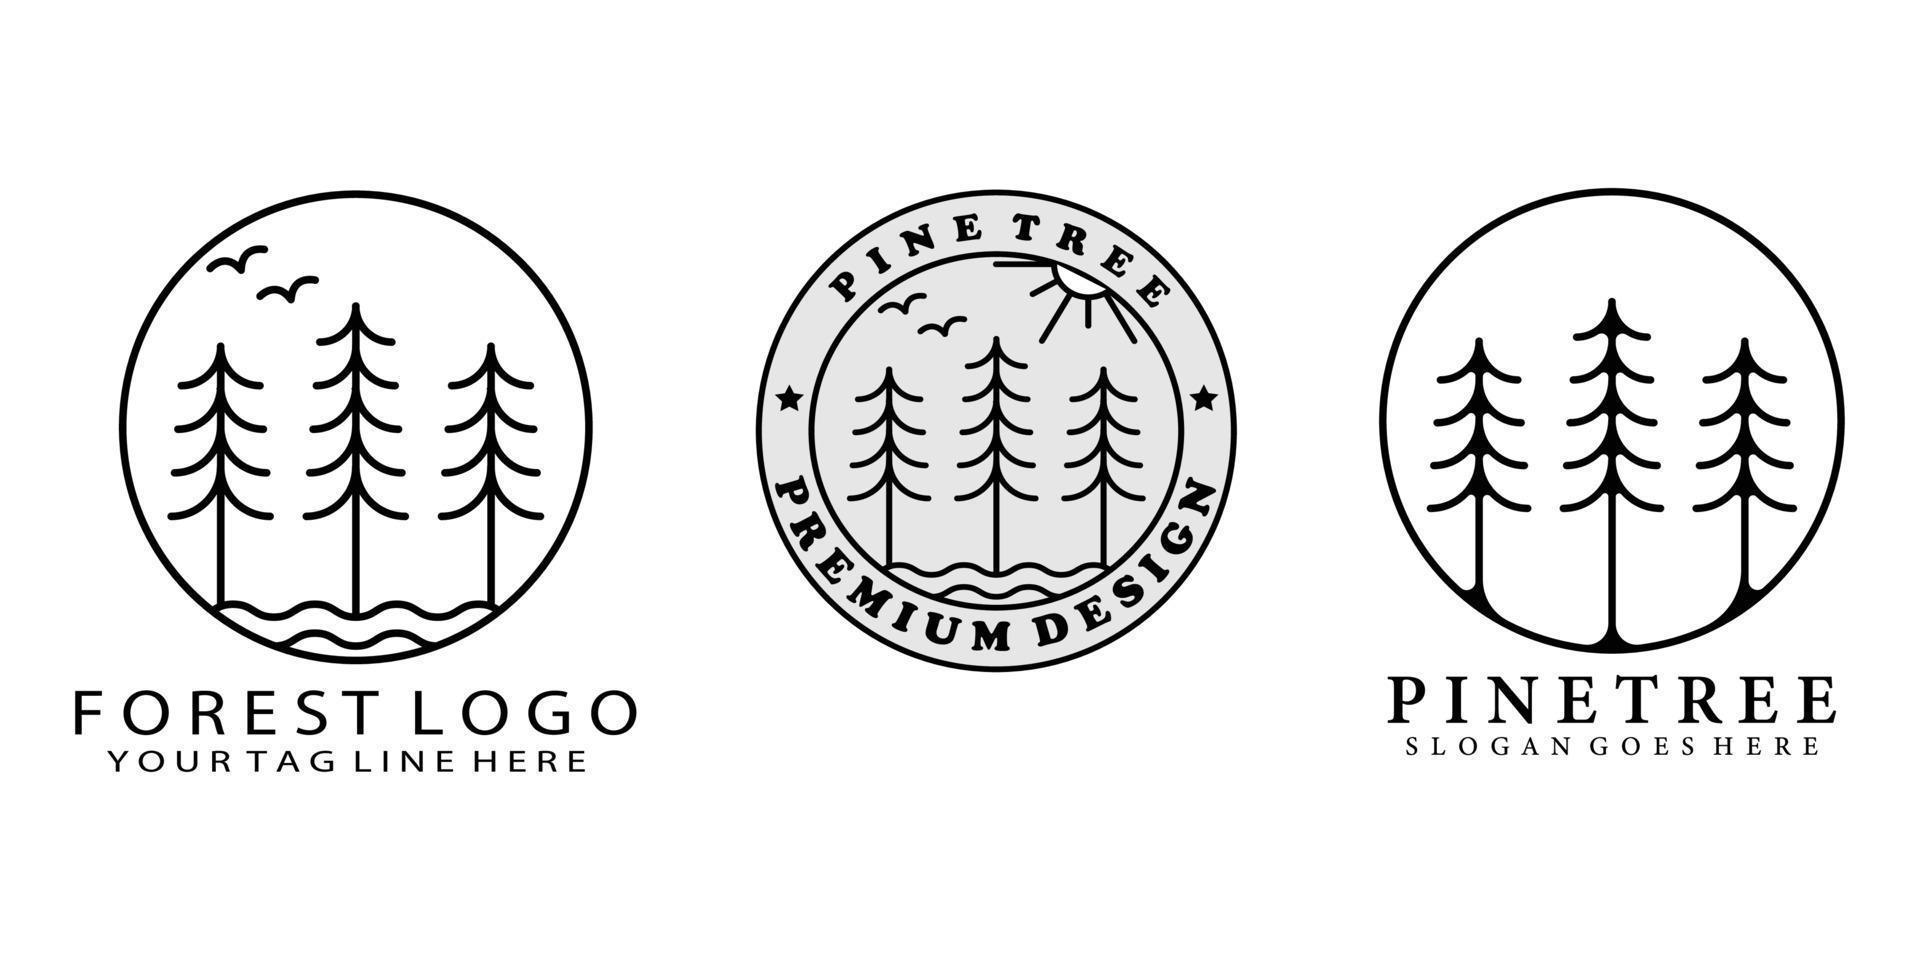 impostare l'illustrazione del disegno vettoriale del logo dell'albero di pino del fascio